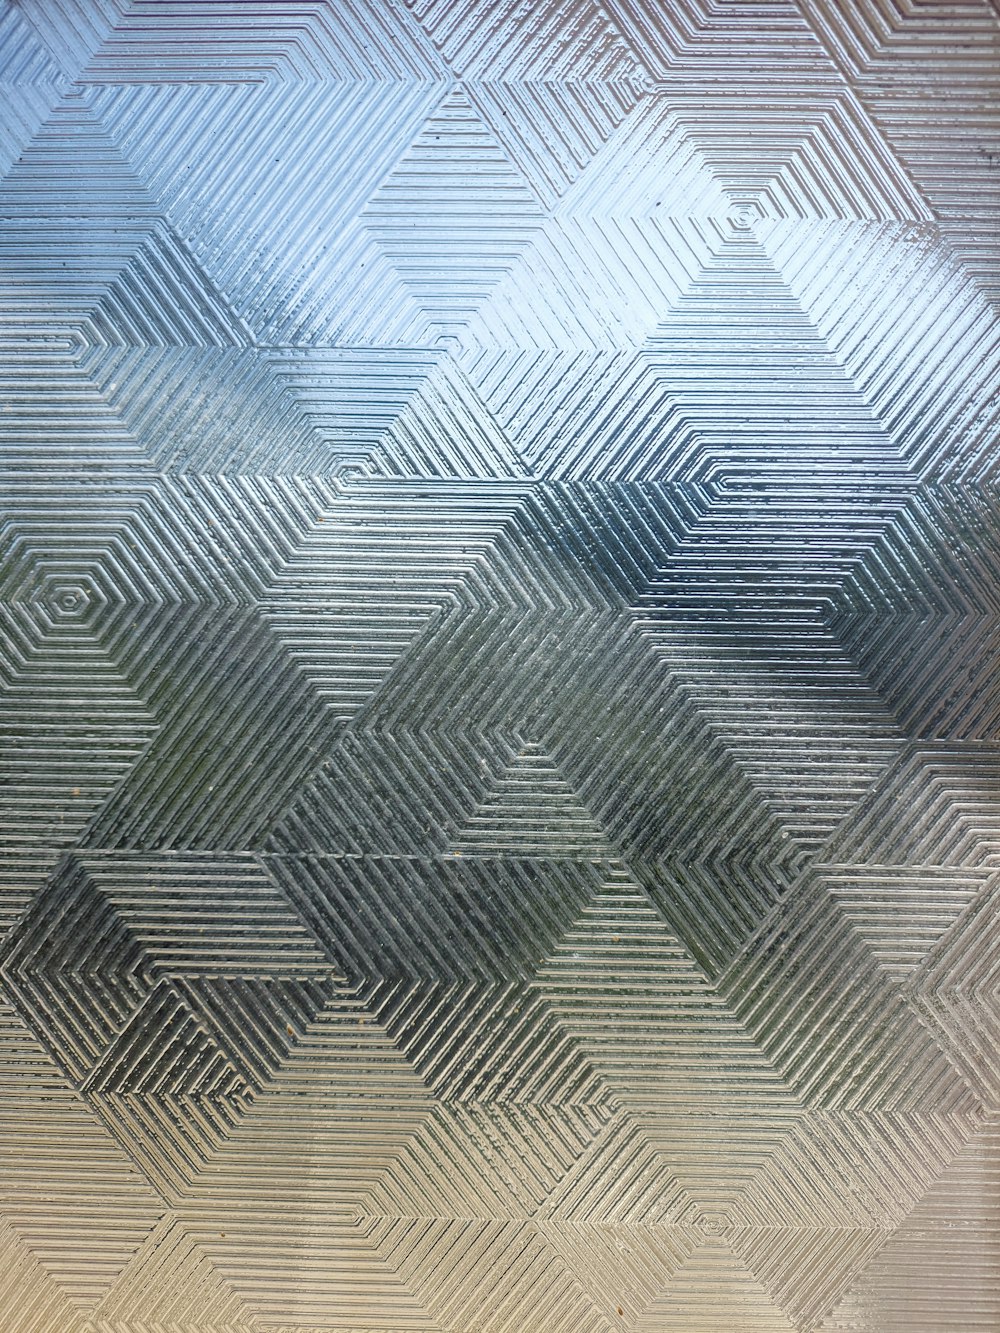 창에 다이아몬드 패턴의 흐릿한 이미지